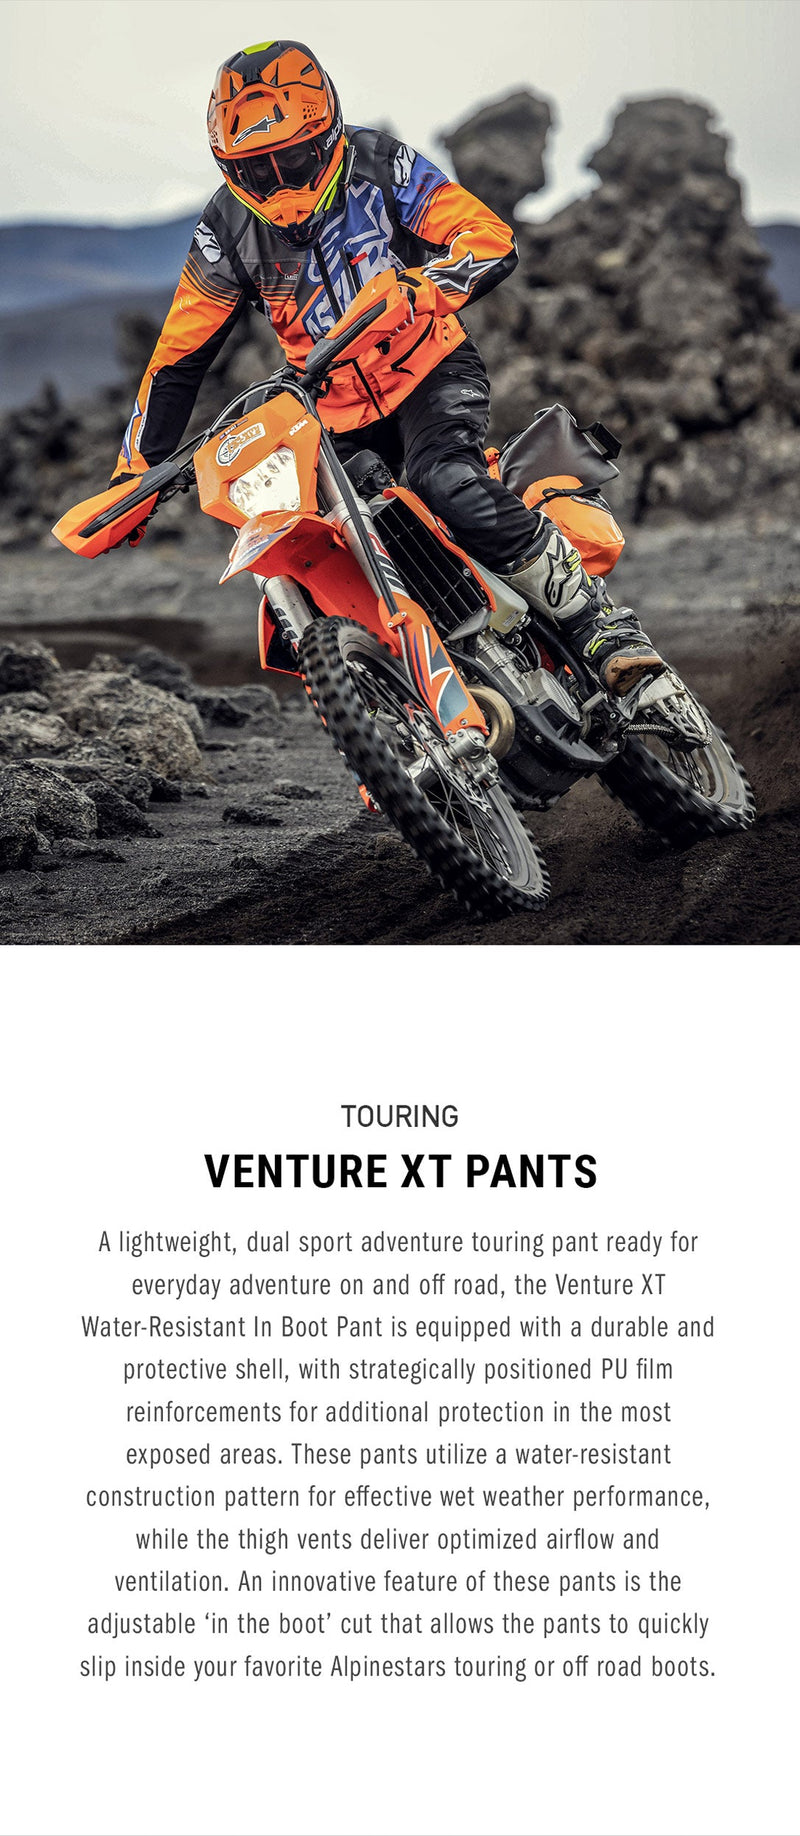 Venture XT Pants In Boot